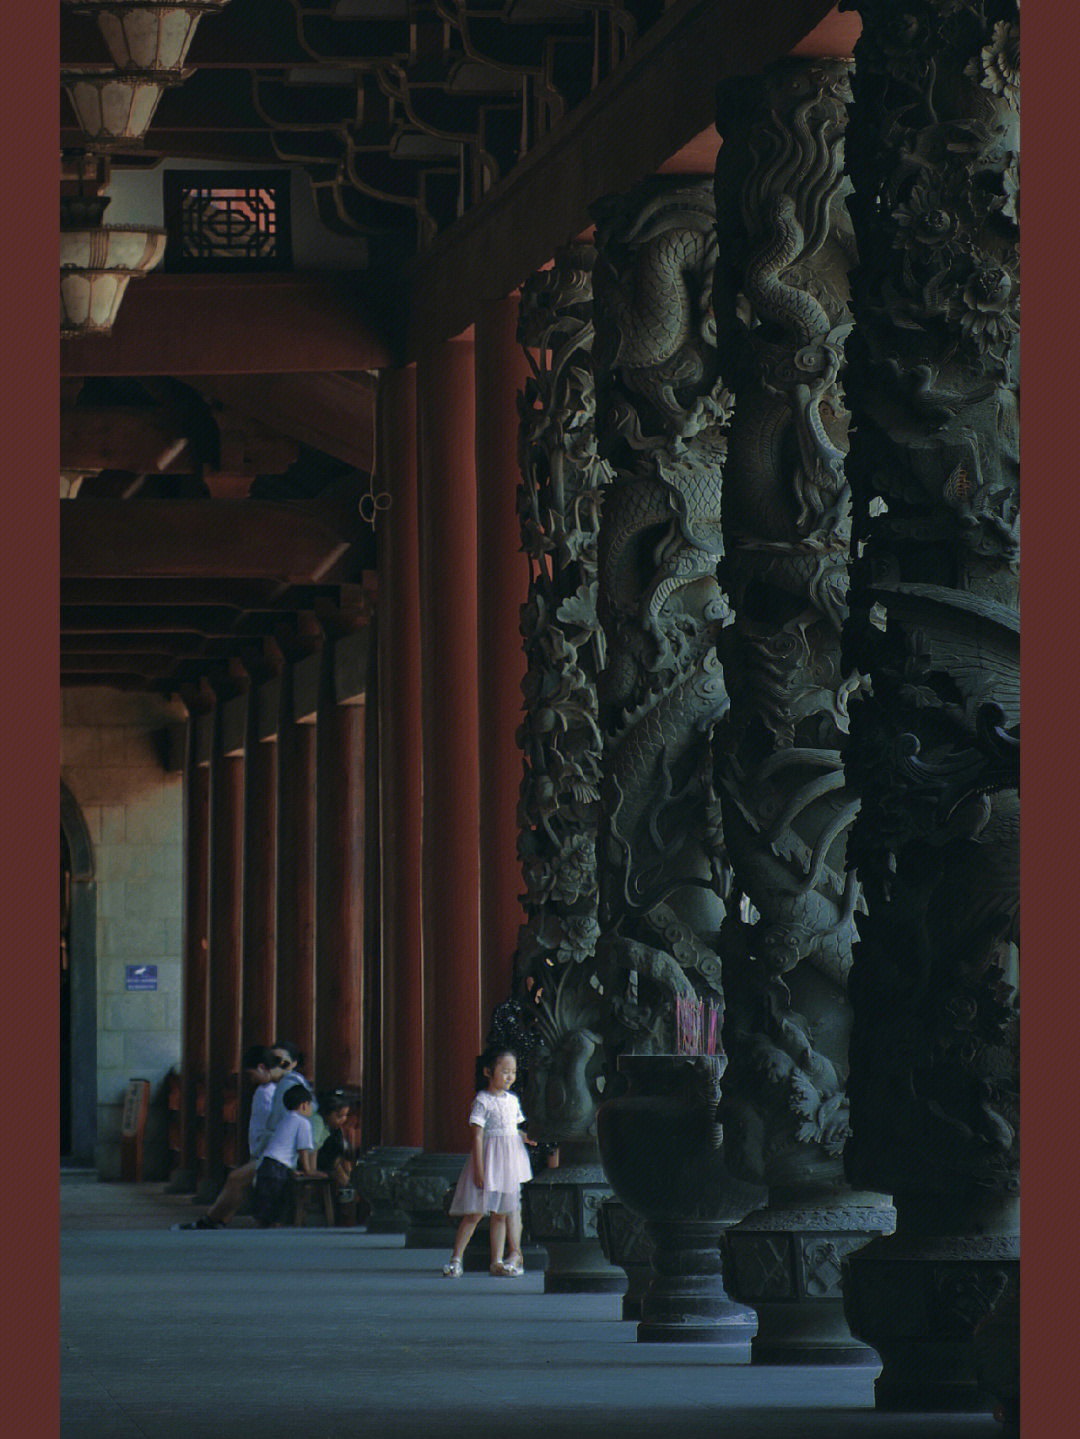 福州万佛寺祈福步骤图片